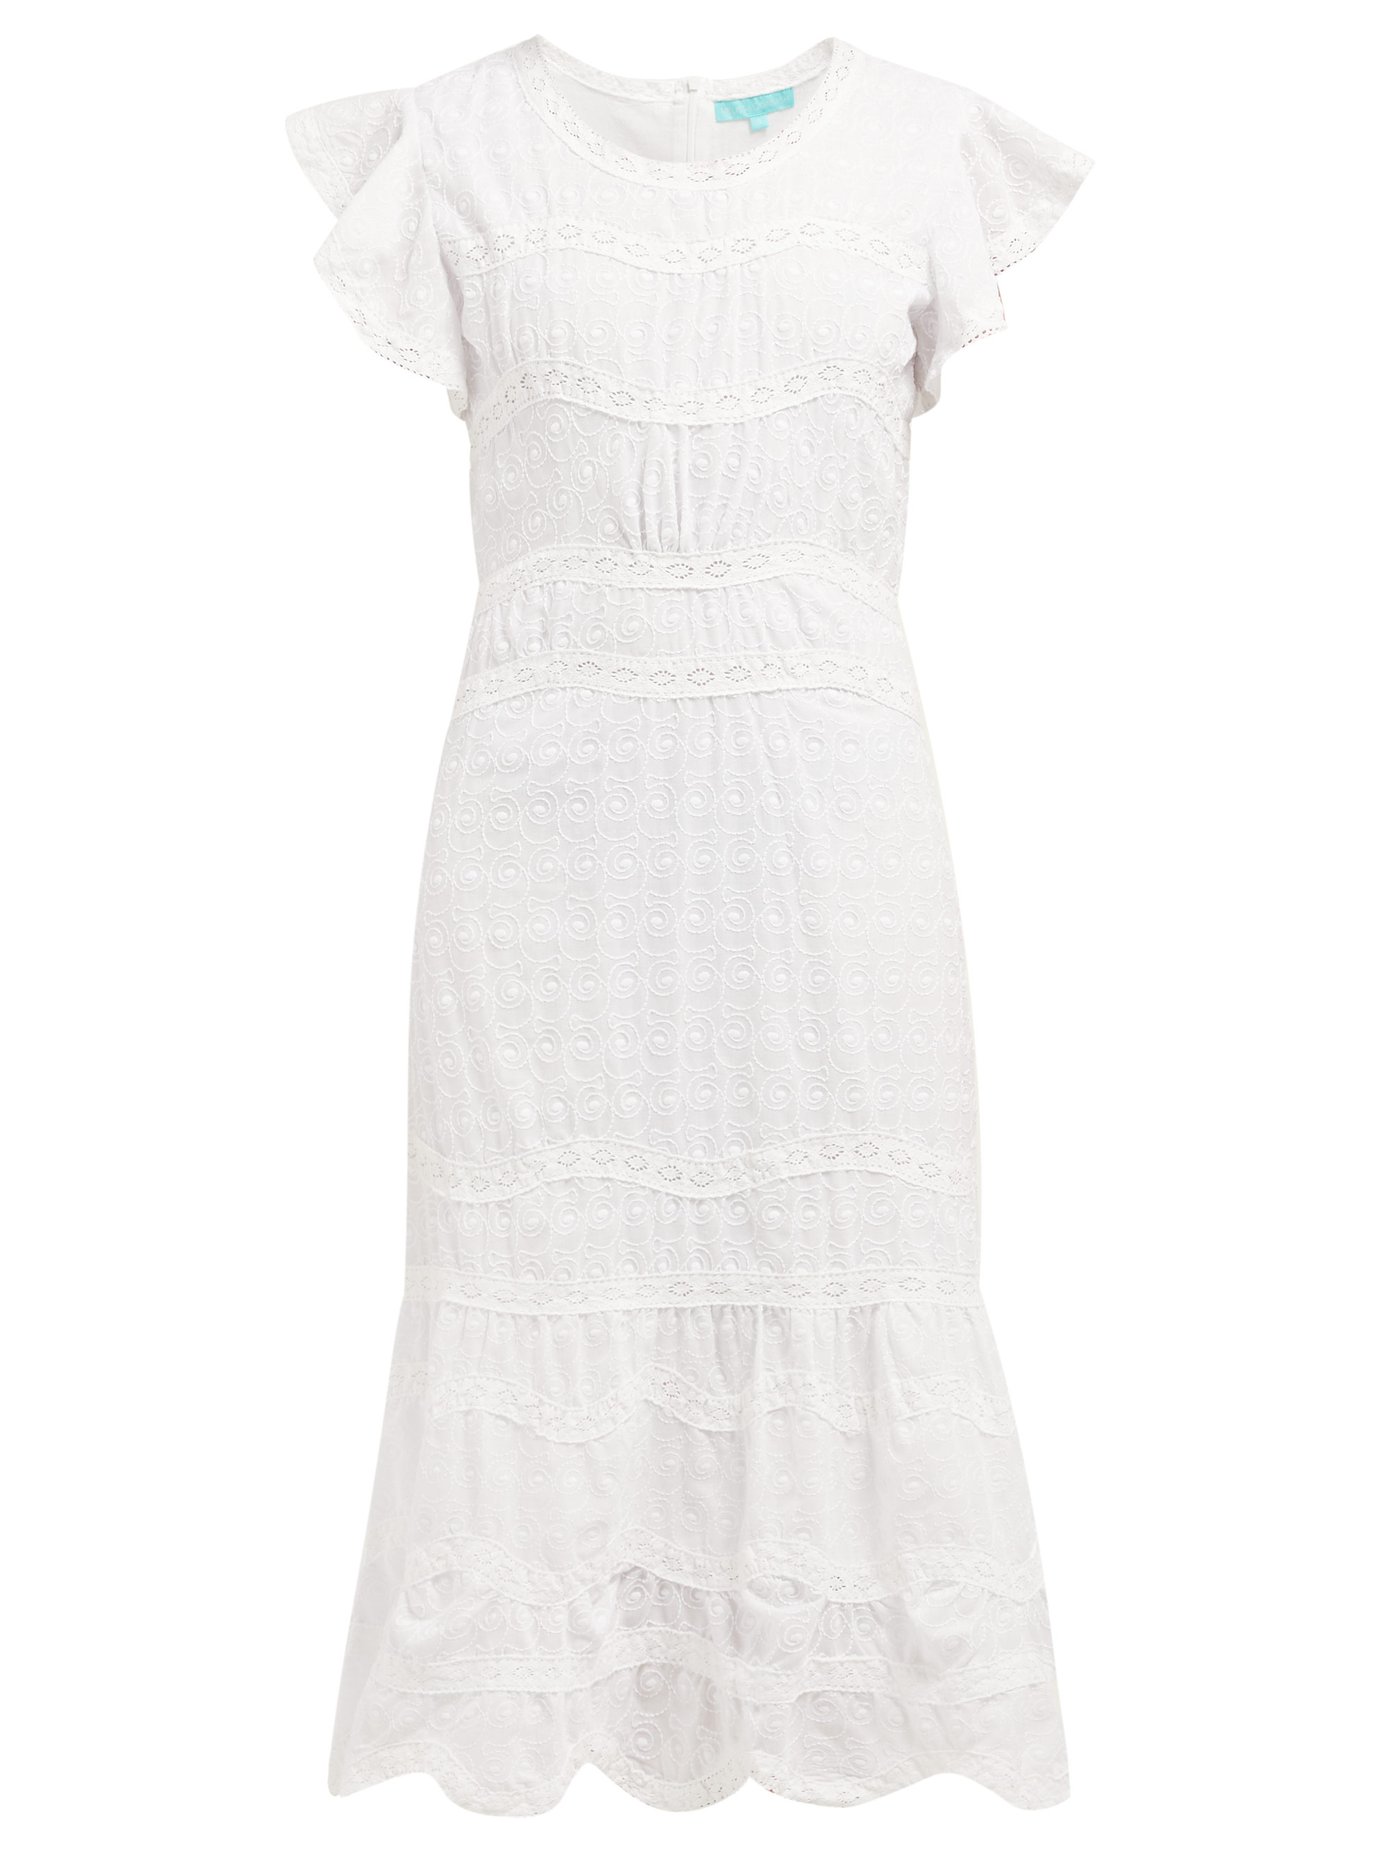 melissa odabash white dress